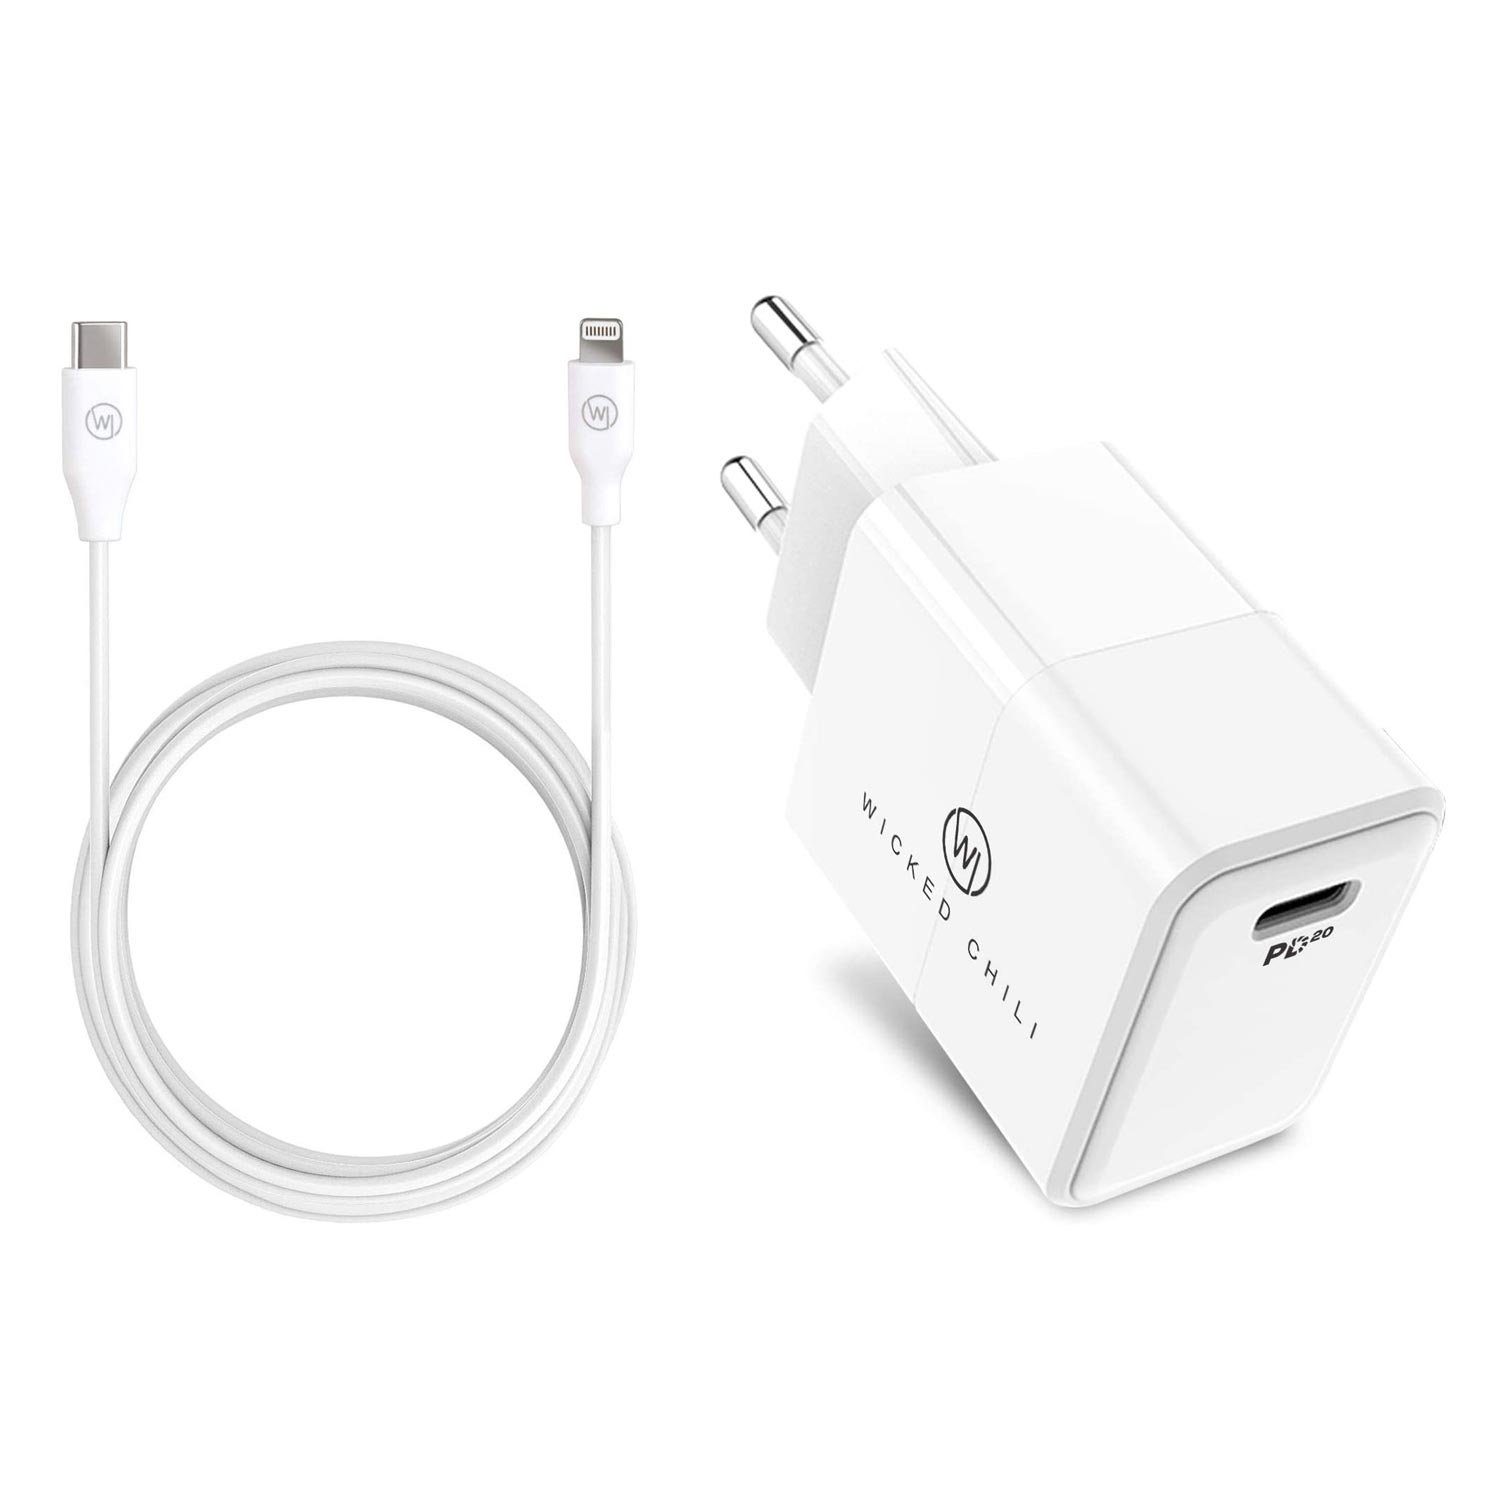 Wicked Chili »20W Netzteil USB C + Lightning Kabel für iPhone«  Steckernetzteil (USB-C